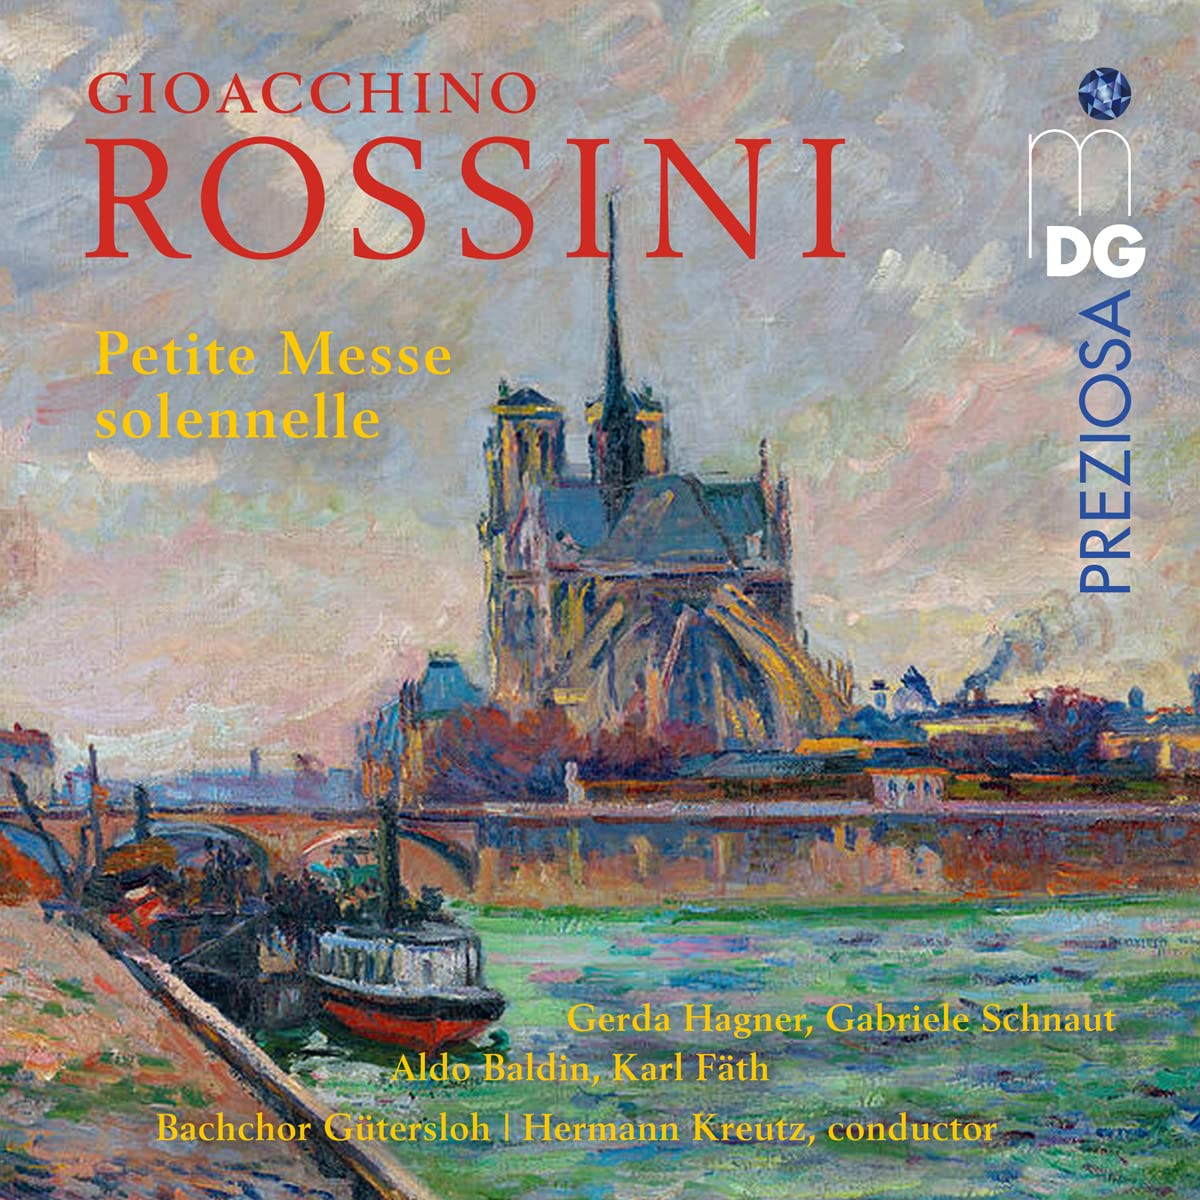 Audio Cd Gioacchino Rossini - Petite Messe Solennelle (2 Cd) NUOVO SIGILLATO, EDIZIONE DEL 16/11/2022 SUBITO DISPONIBILE